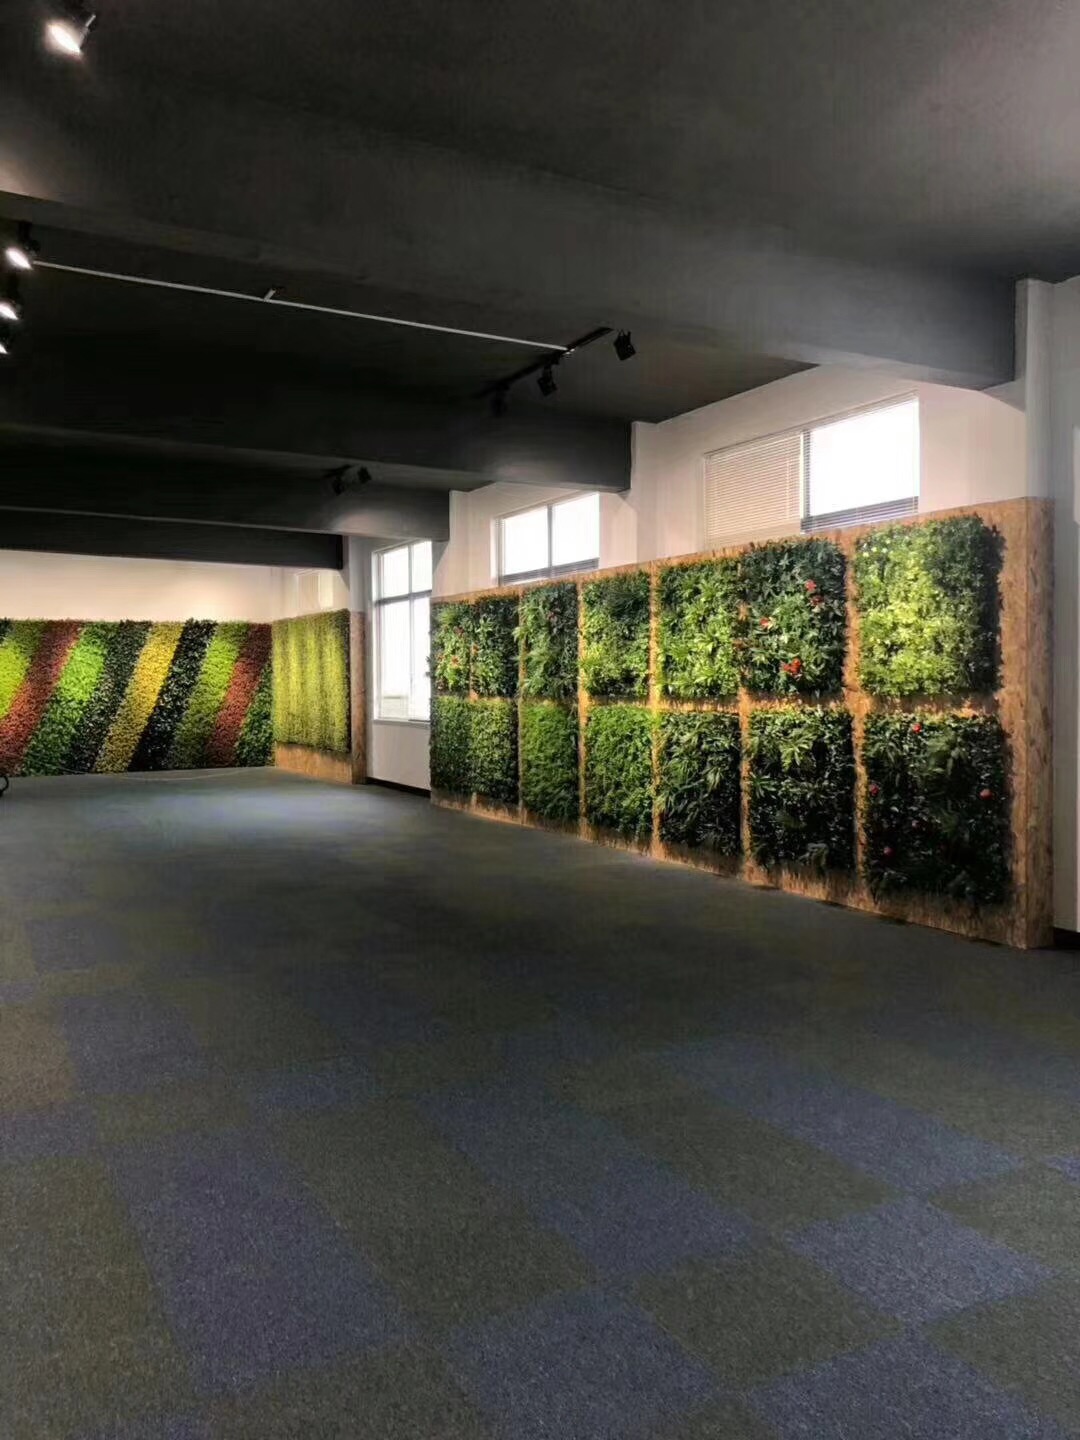 垂直绿化植物墙垂直绿化植物墙雄安保定昊帅专业安装